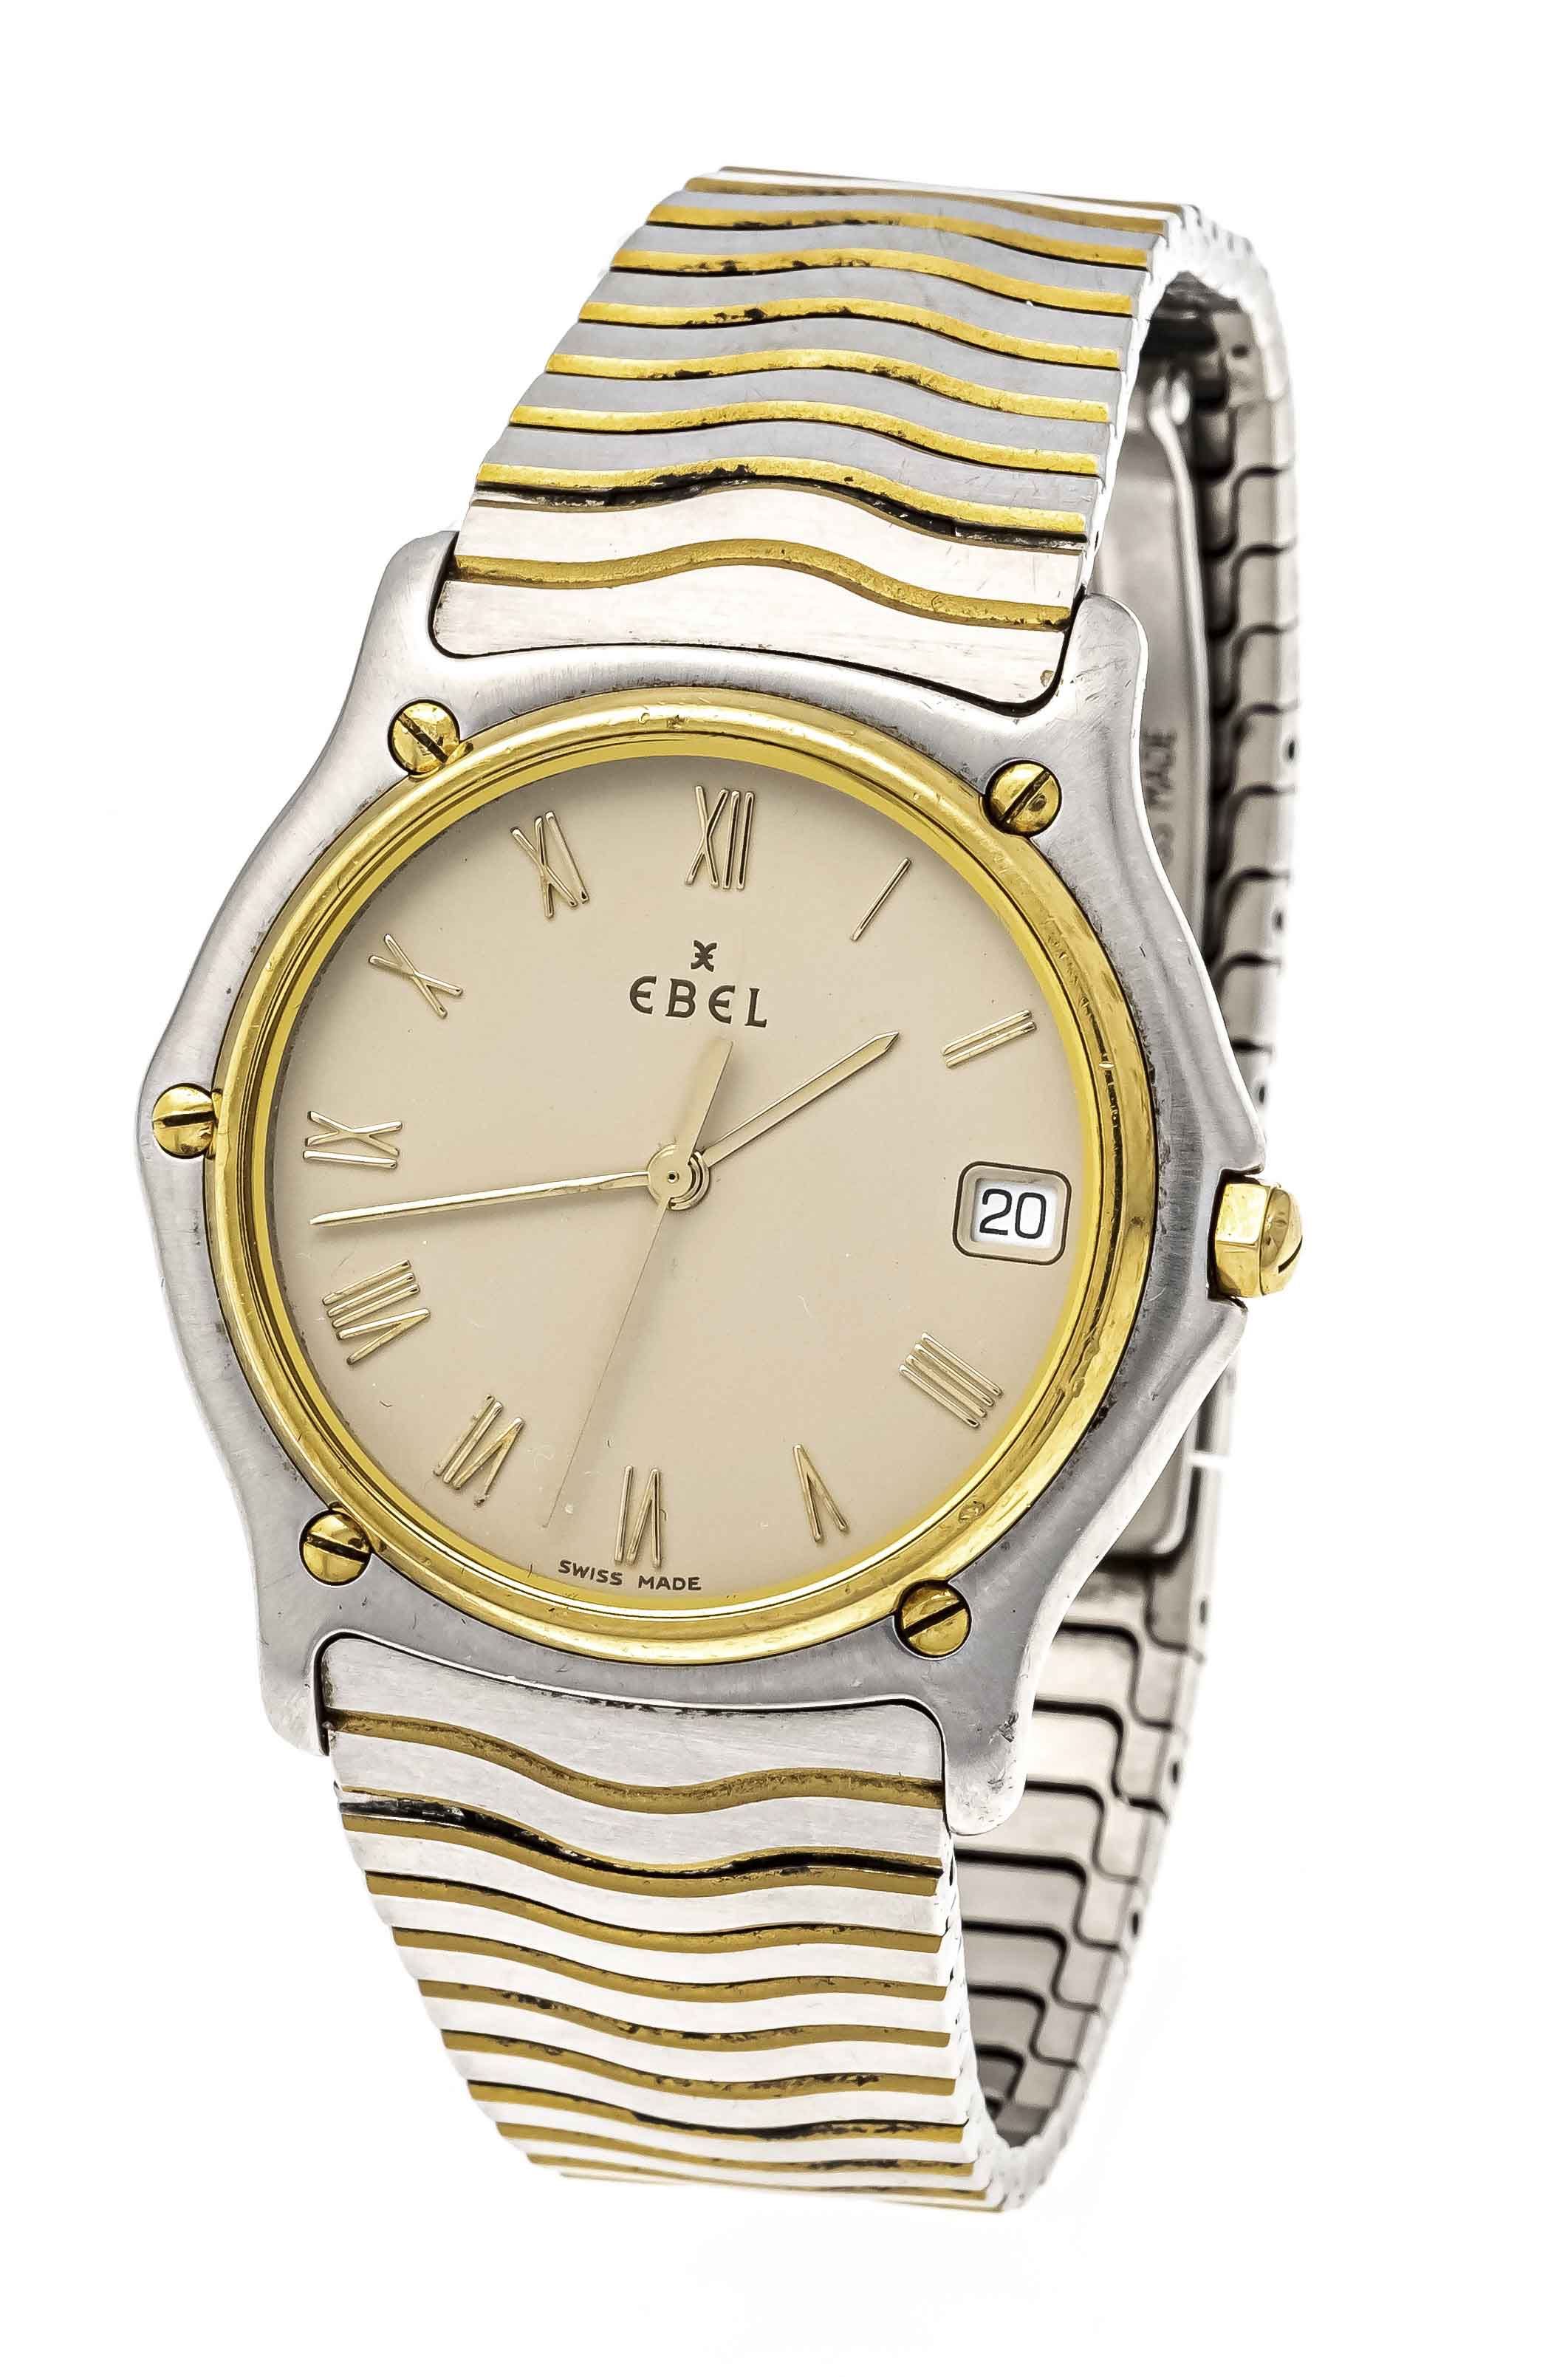 Ebel ''Sport Classique Wave'', men's quartz watch, steel/gold, 750/000 GG, ref. 118.7141, from 1999,